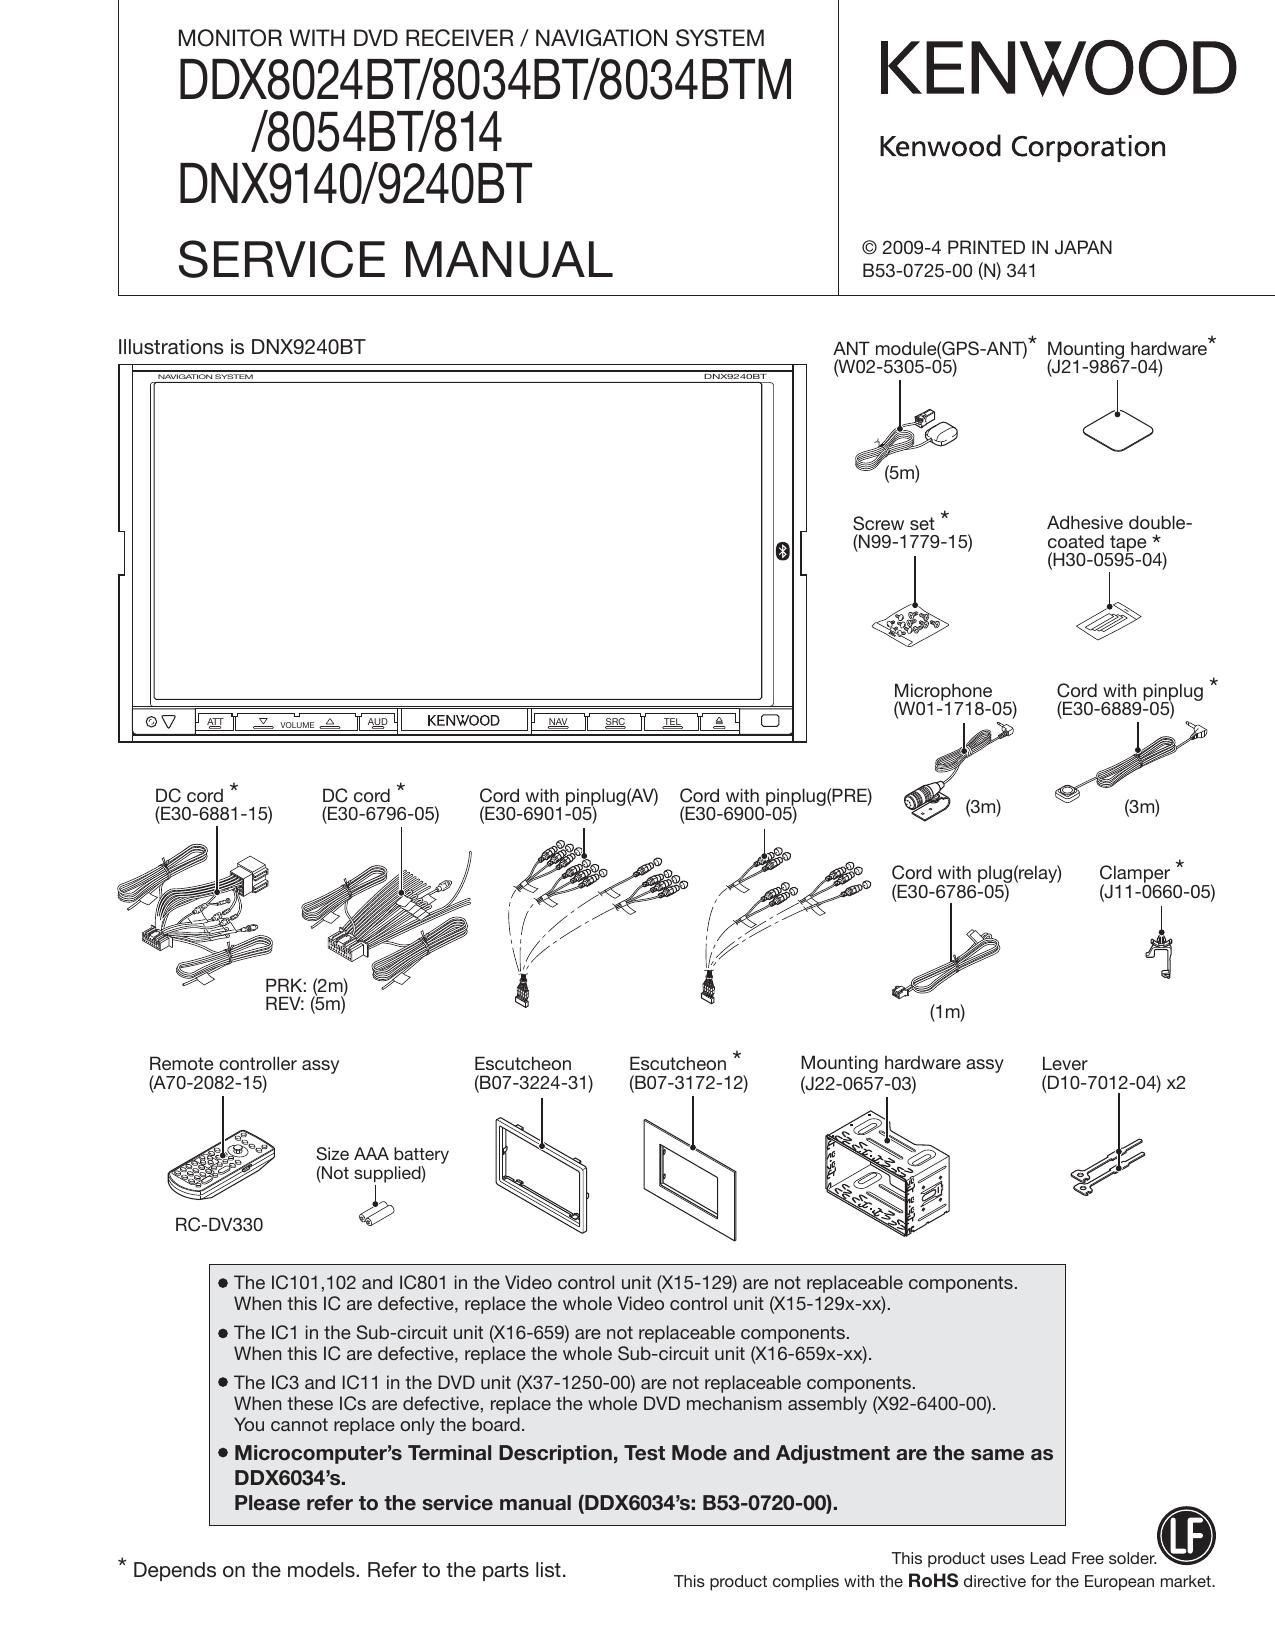 Kenwood DDX 8034 BT Service Manual